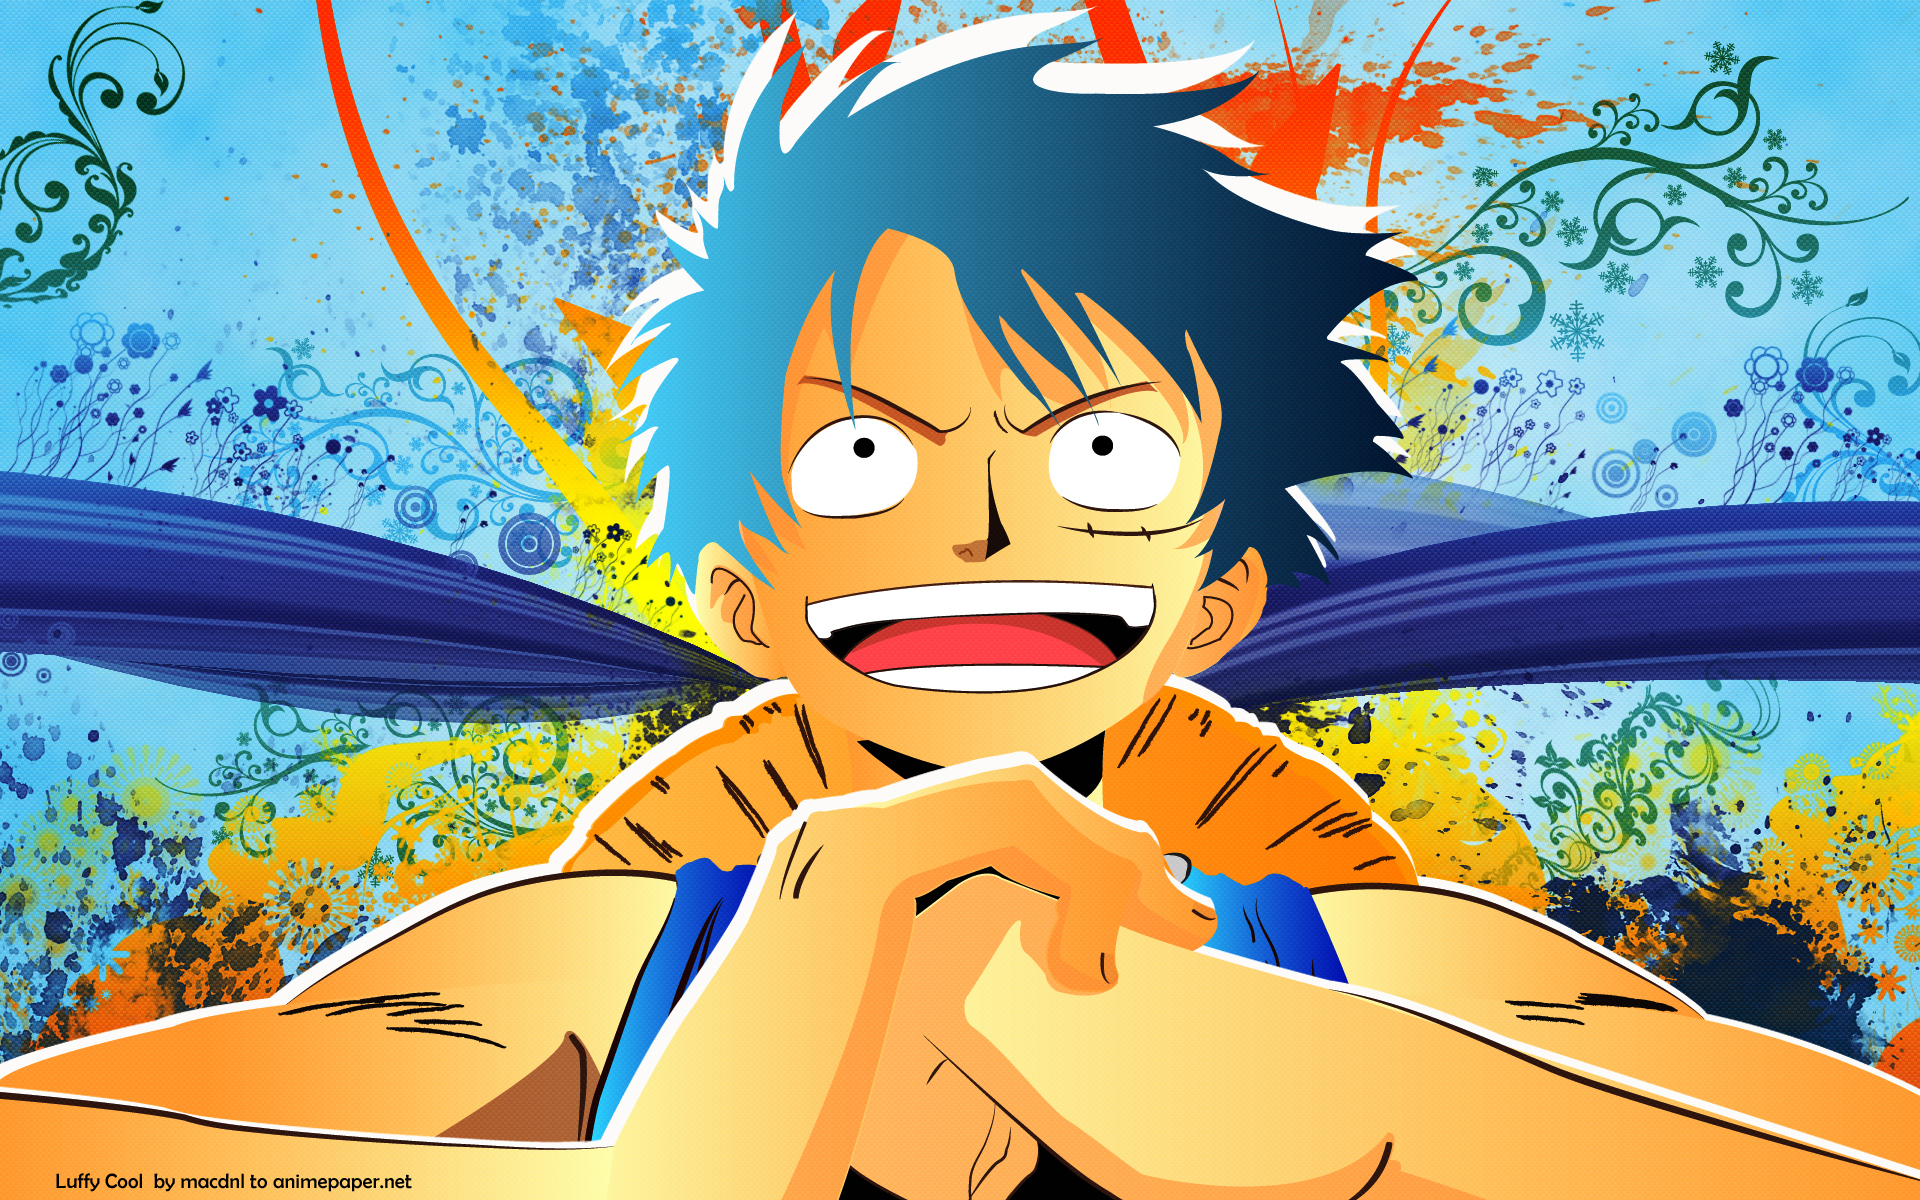 Anime One Piece HD Wallpaper: Với độ phân giải cao và màu sắc sống động, Anime One Piece HD Wallpaper sẽ đưa bạn đến với Cửu Long Đại Lục và tham gia nhiều cuộc phiêu lưu cùng băng hải tặc Mũ Rơm. Hãy tận hưởng trải nghiệm đặc biệt này bằng cách tải về ngay hôm nay.